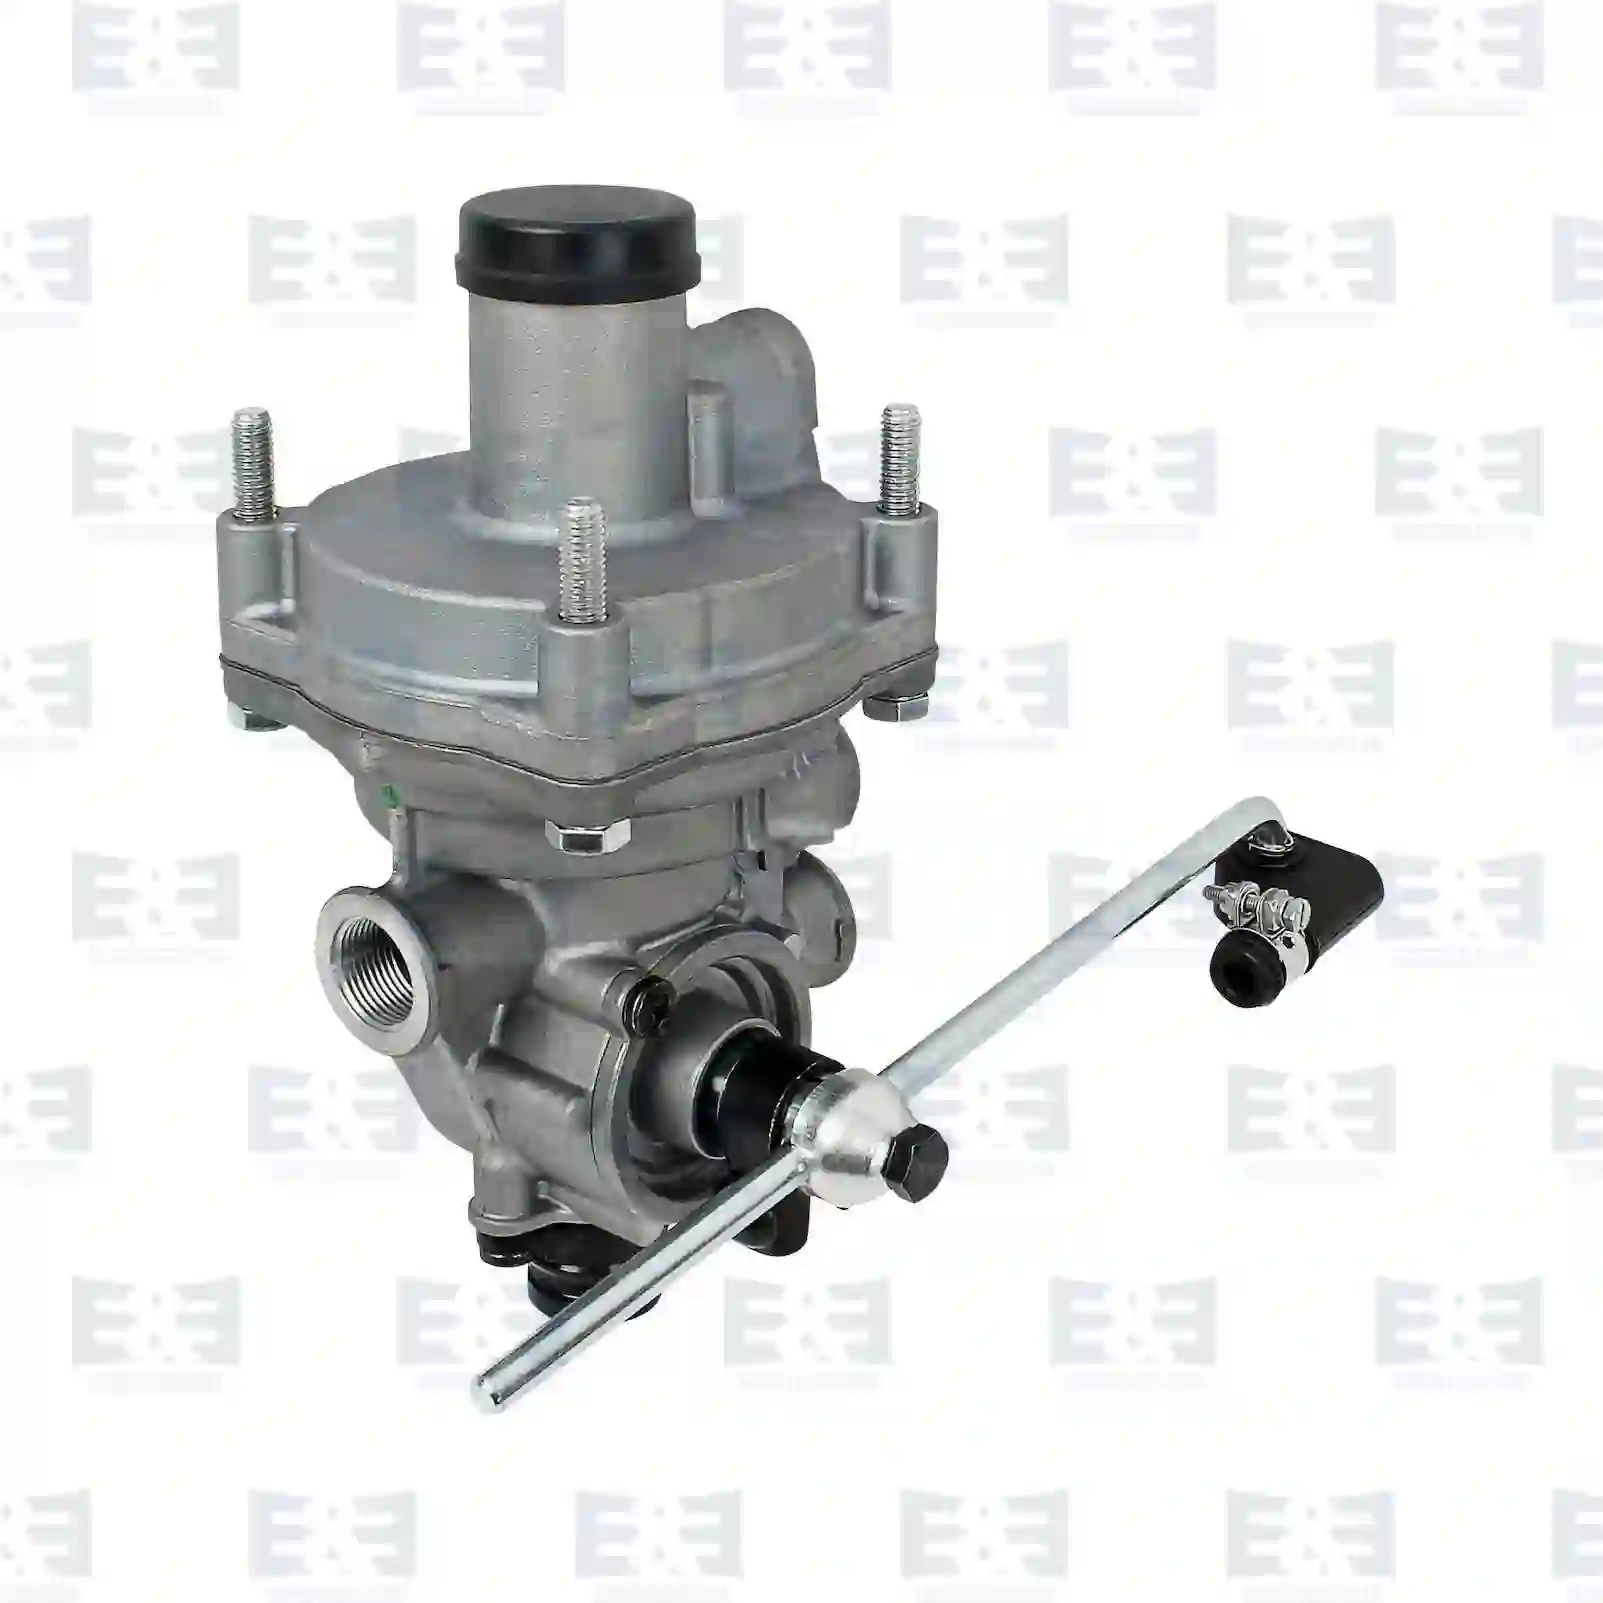  Load sensitive valve || E&E Truck Spare Parts | Truck Spare Parts, Auotomotive Spare Parts